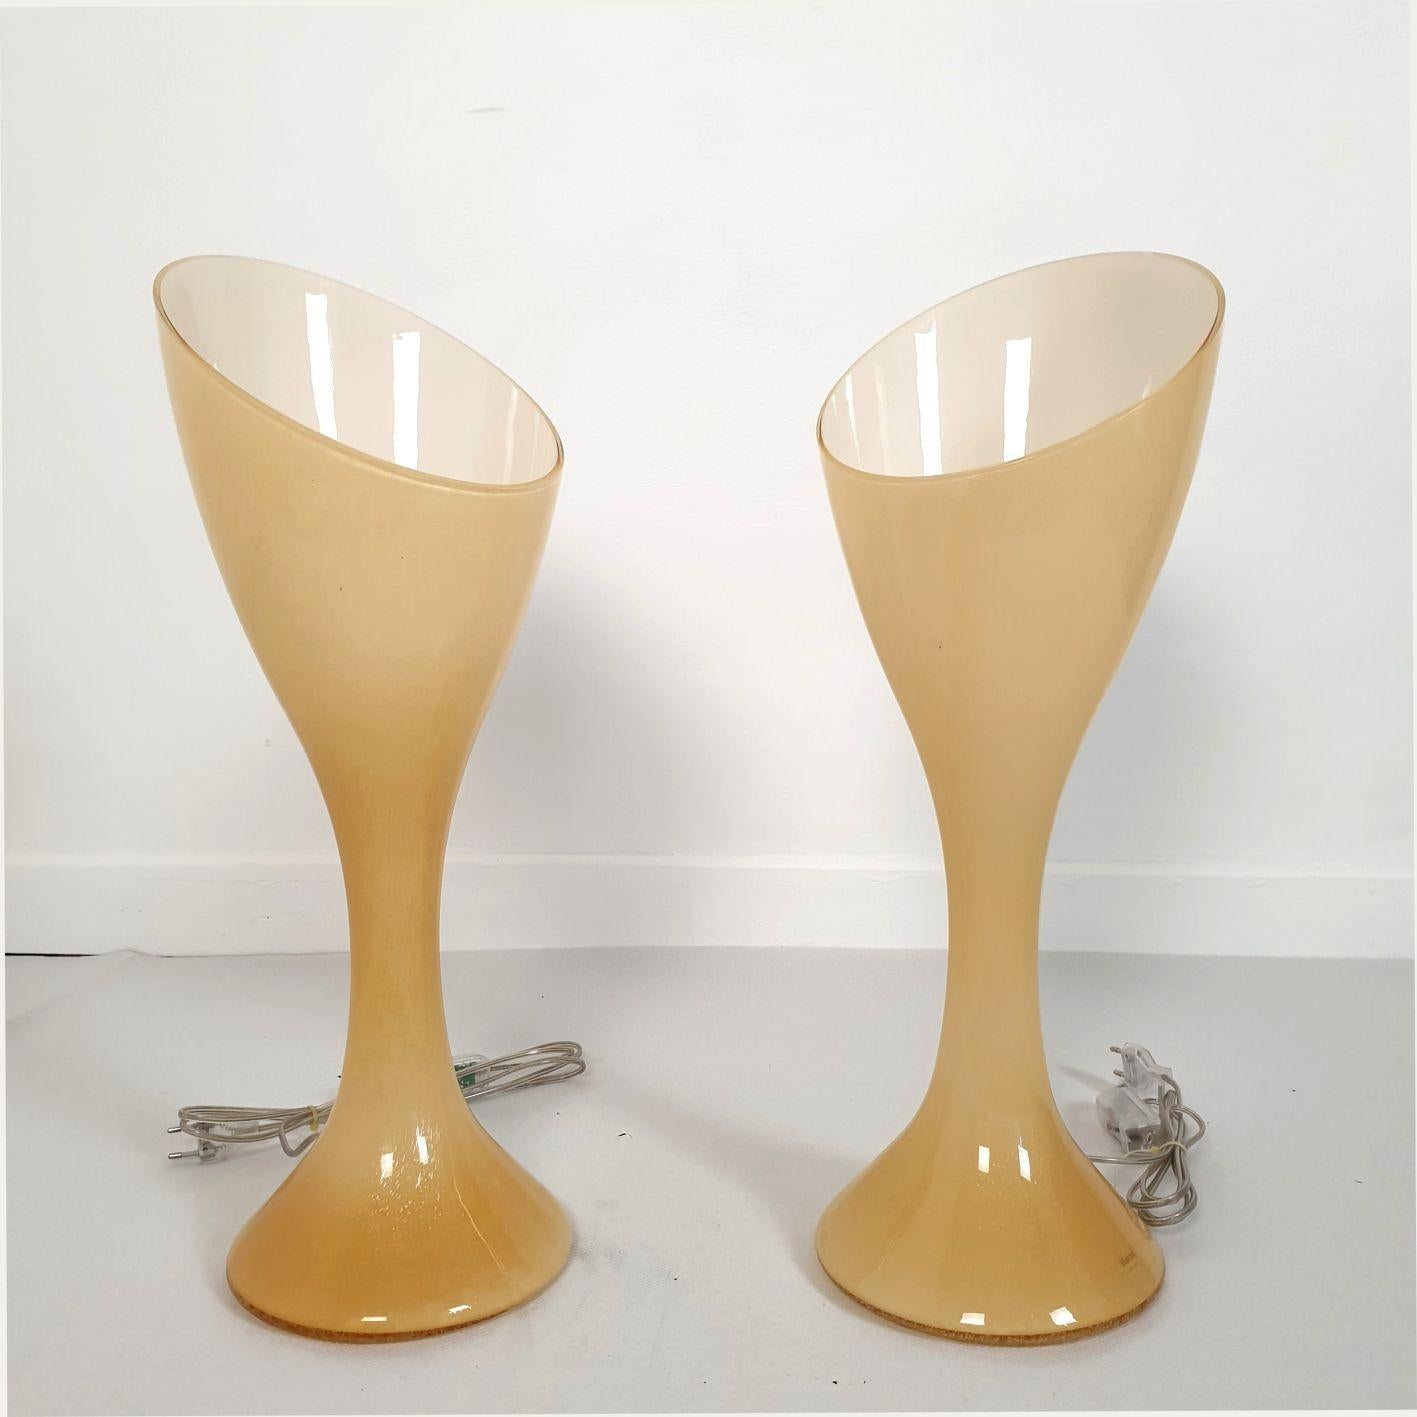 Paire de lampes de table en verre de Murano beige de style moderne du milieu du siècle, estampillées Vistosi, Italie, années 1980.
Les lampes Murano sont faites d'un verre à double couche : beige à l'extérieur et blanc à l'intérieur.
Ils ont une